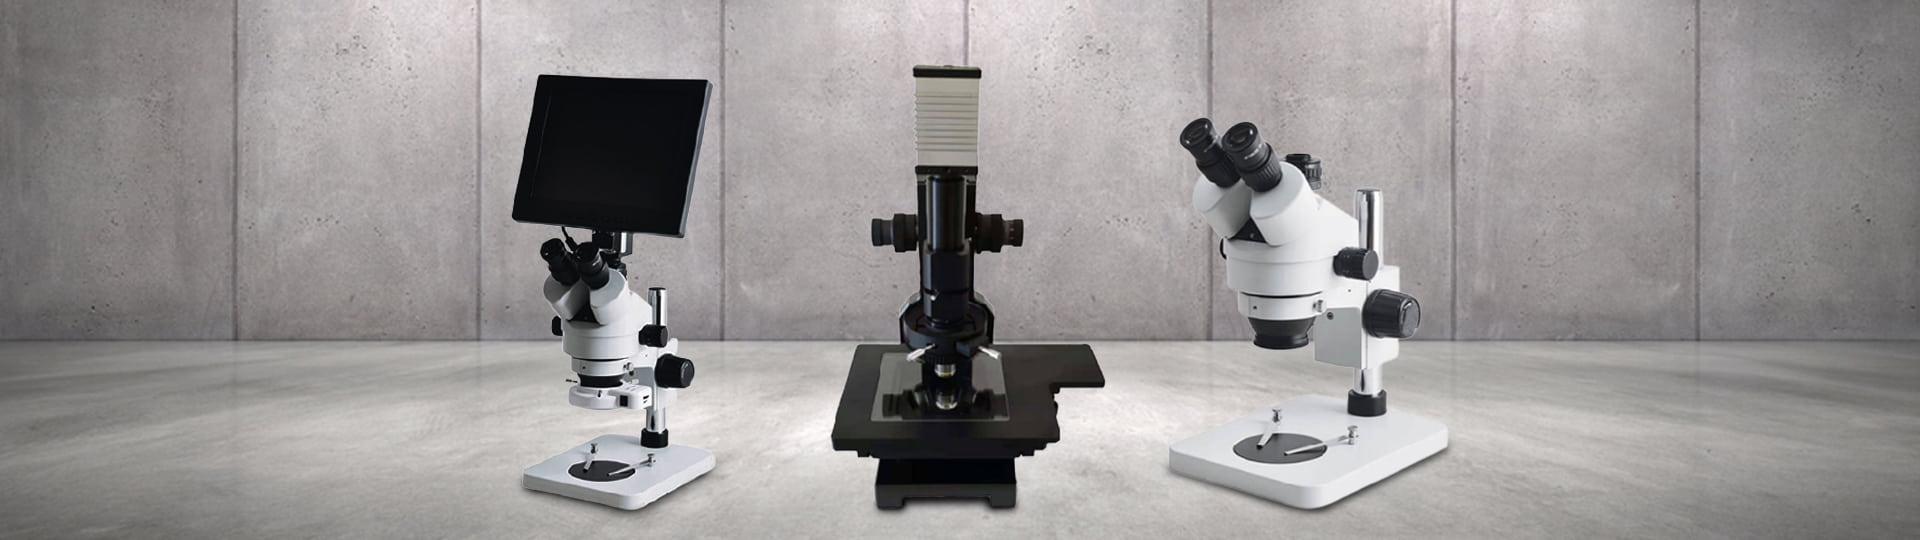 Kính hiển vi - Microscope Chính Hãng - Tecostore